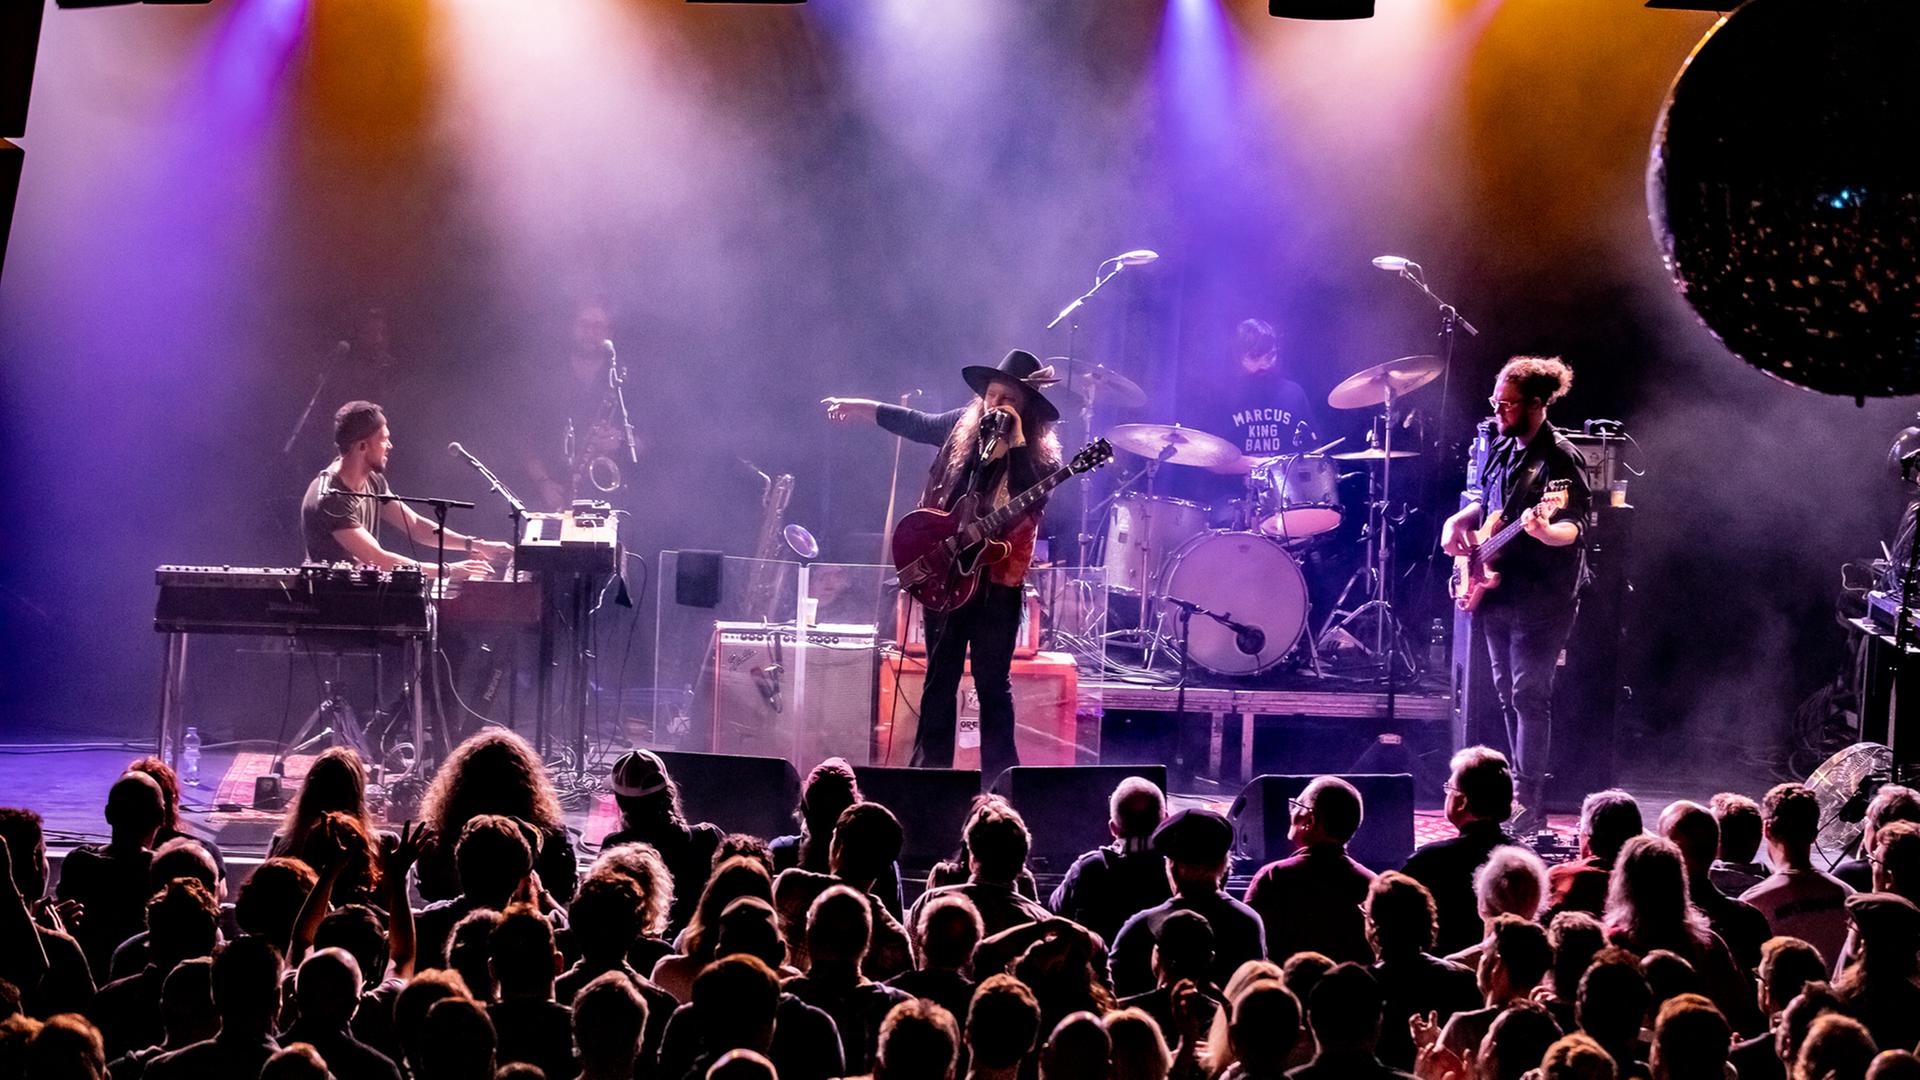 Sechs Männer stehen auf einer mit Nebel und Scheinwerferlicht gefluteten Bühne: der Sänger und Gitarrist in der Mitte zeigt auf jemanden rechts neben sich. Vor der Bühne steht Publikum.